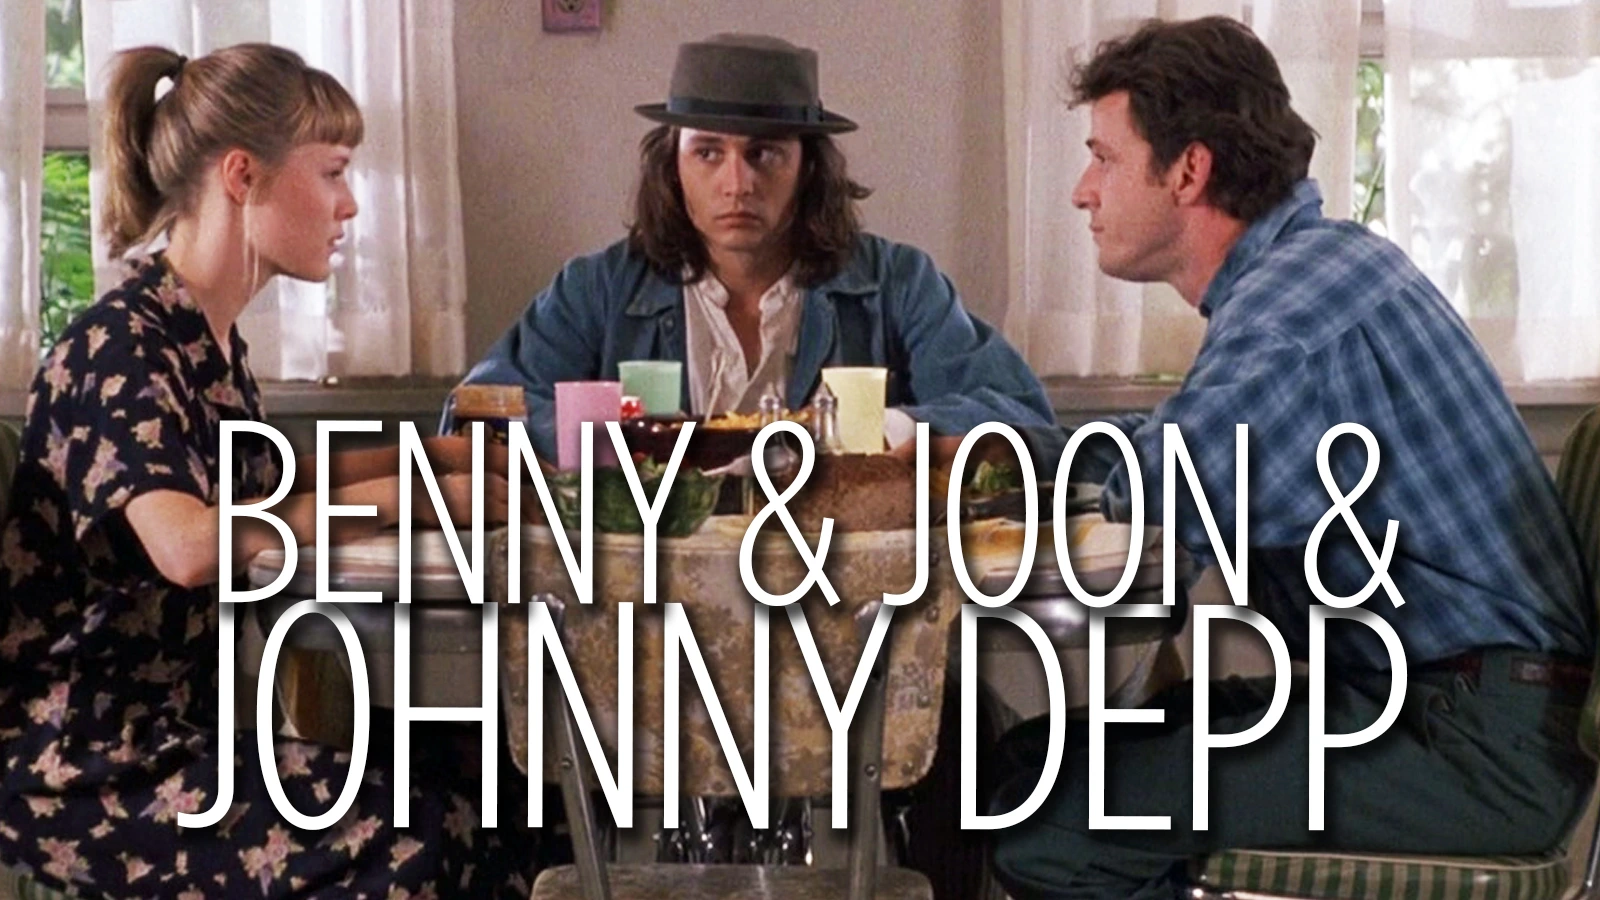 Benny & Joon & Johnny Depp.